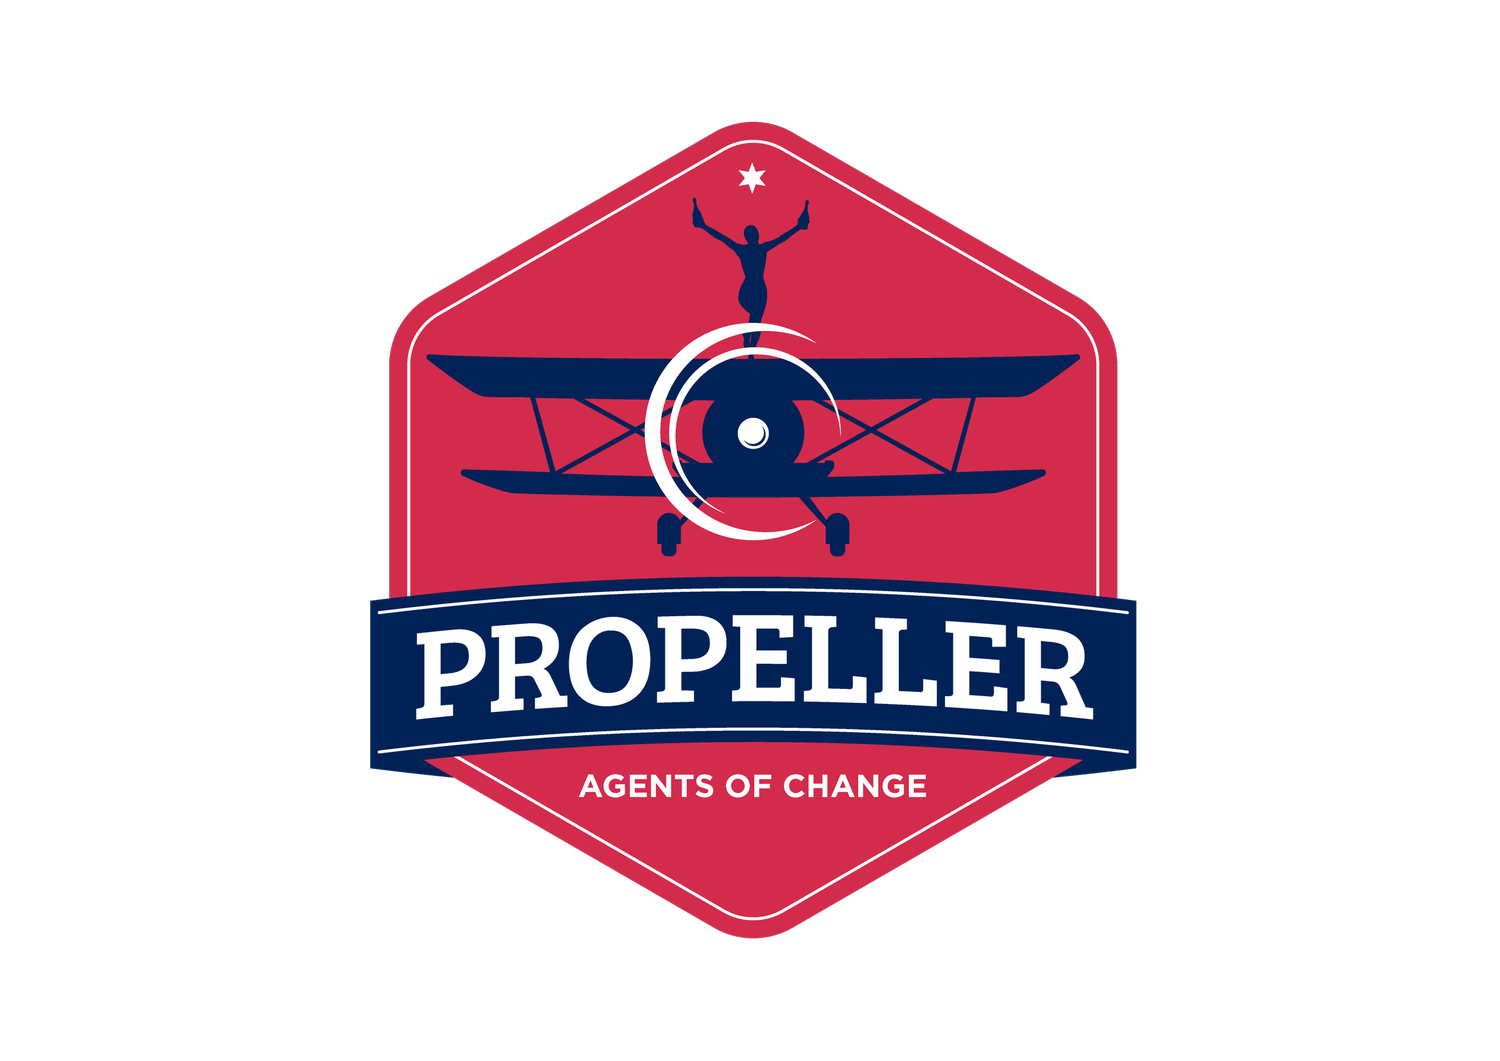 Propeller - Agents Of Change